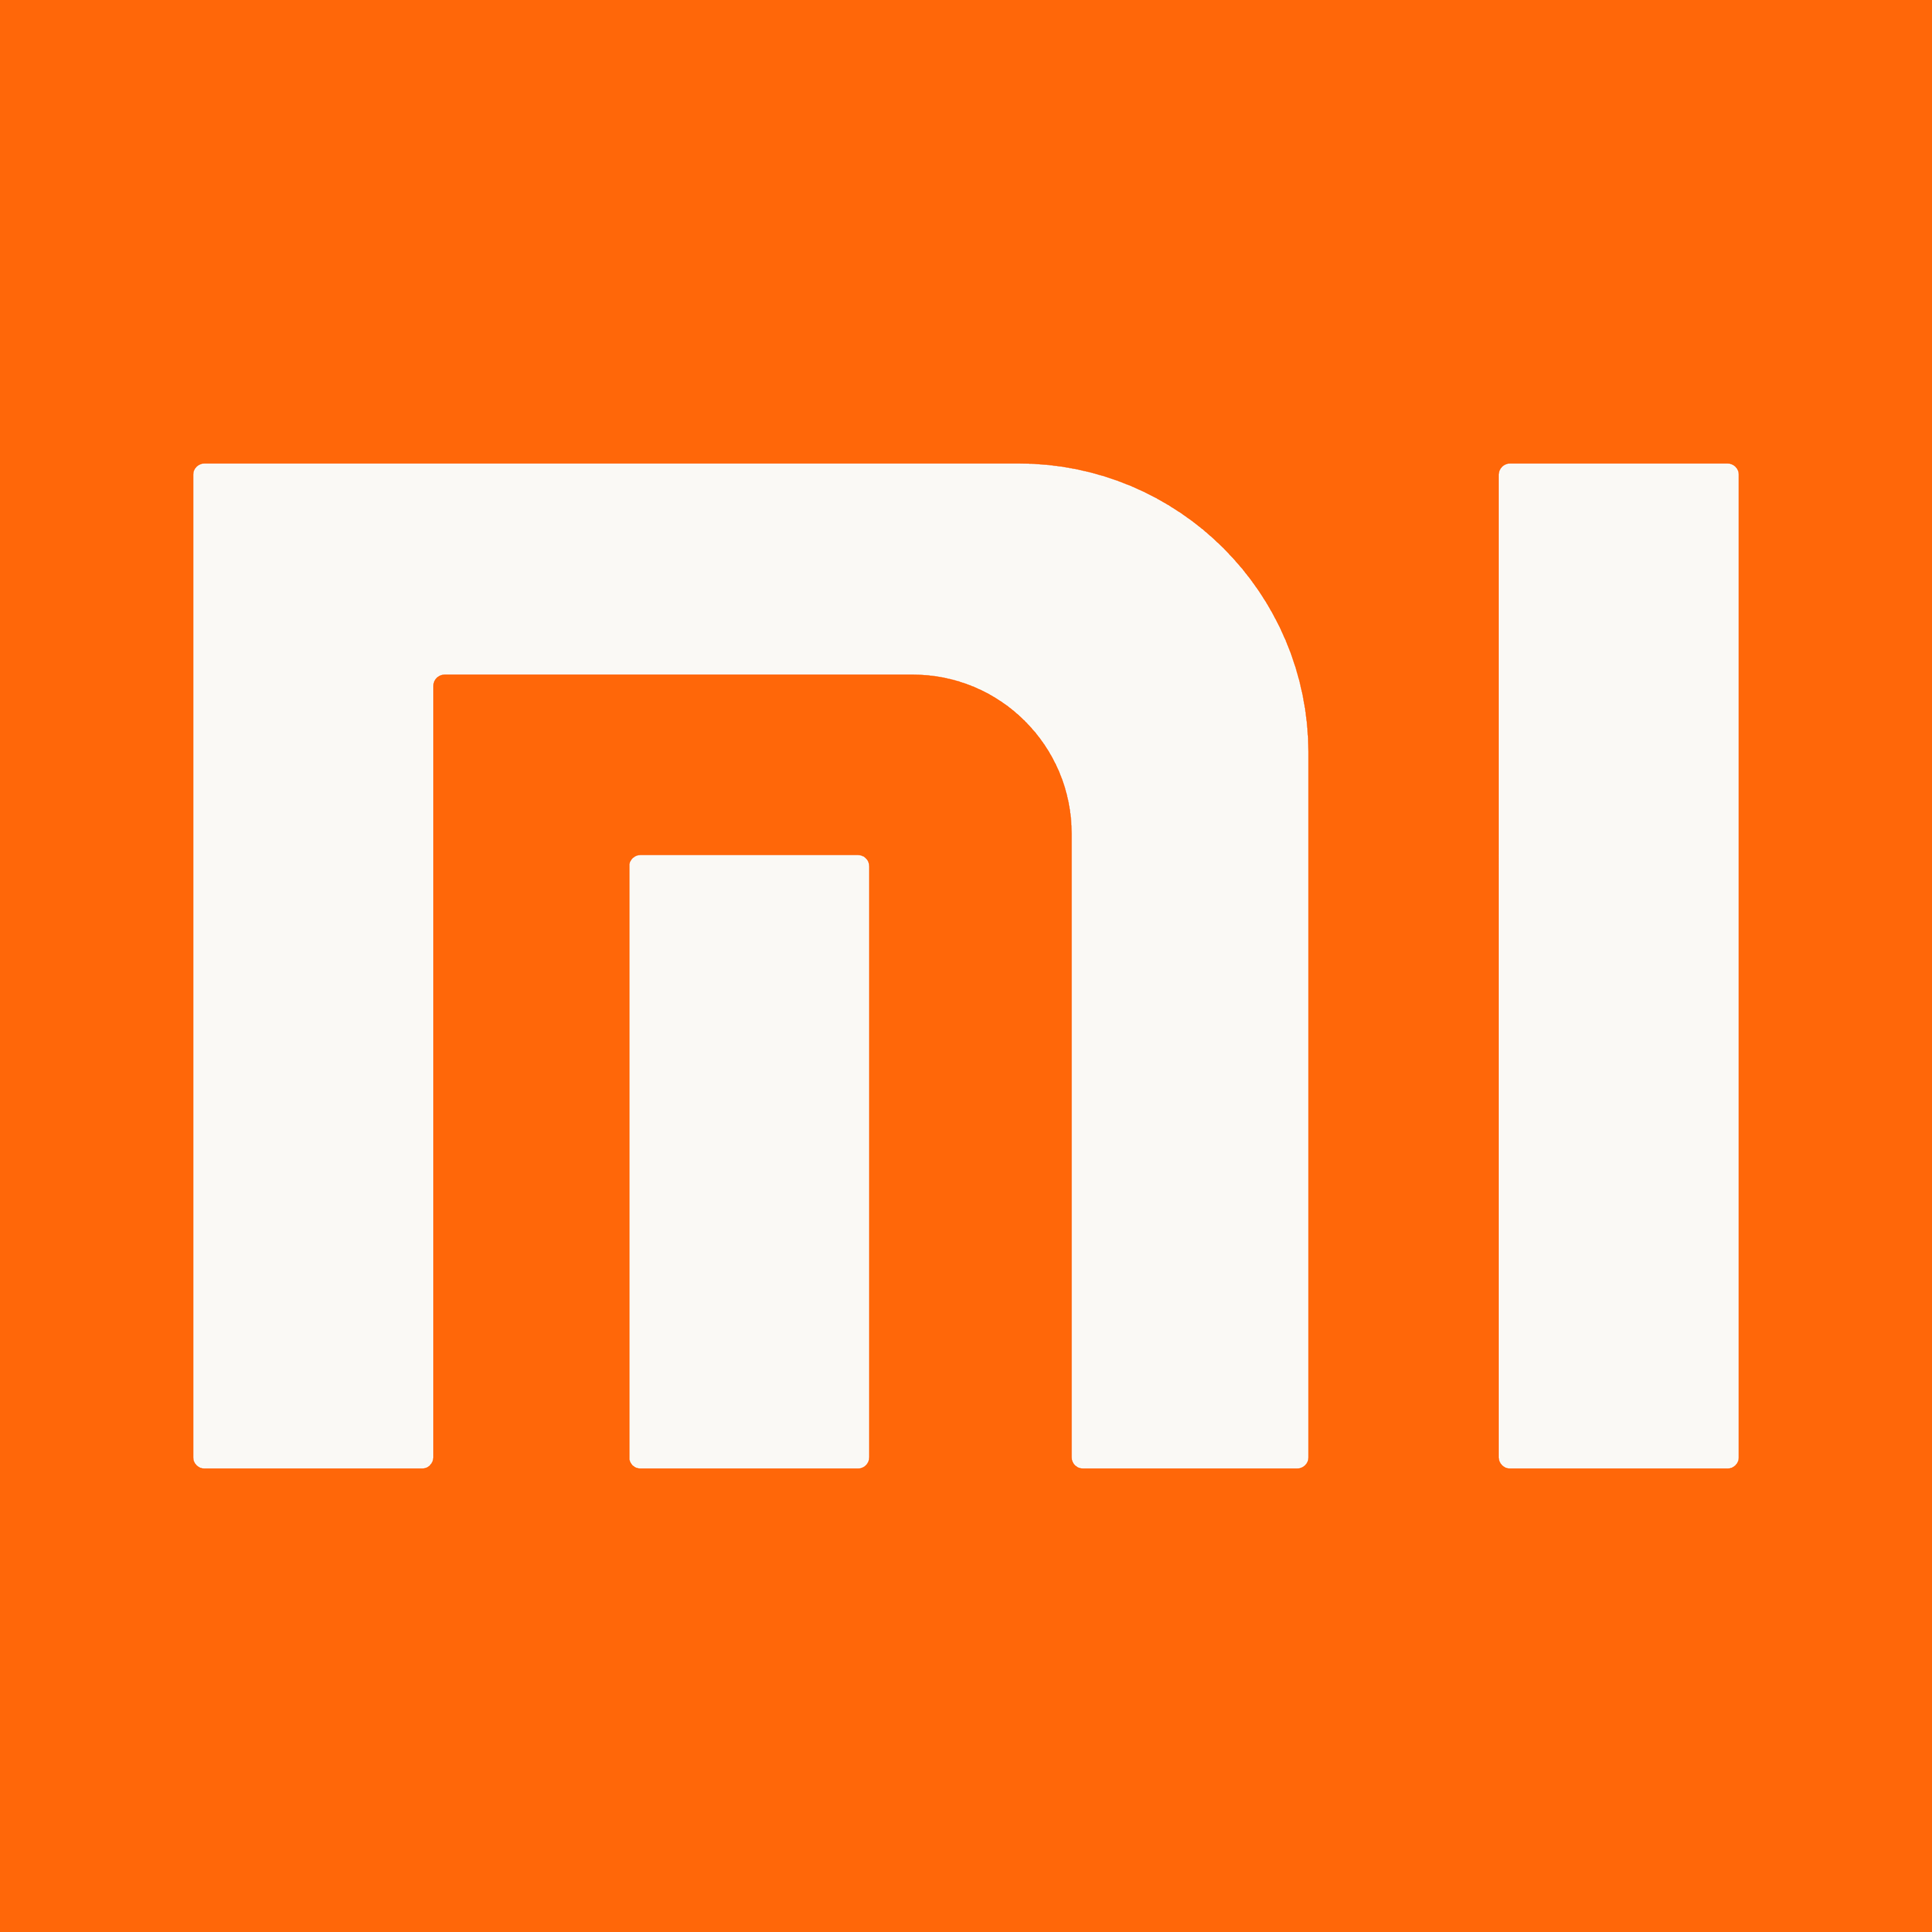 Xiaomi_logo_symbol.png (3300×3300)